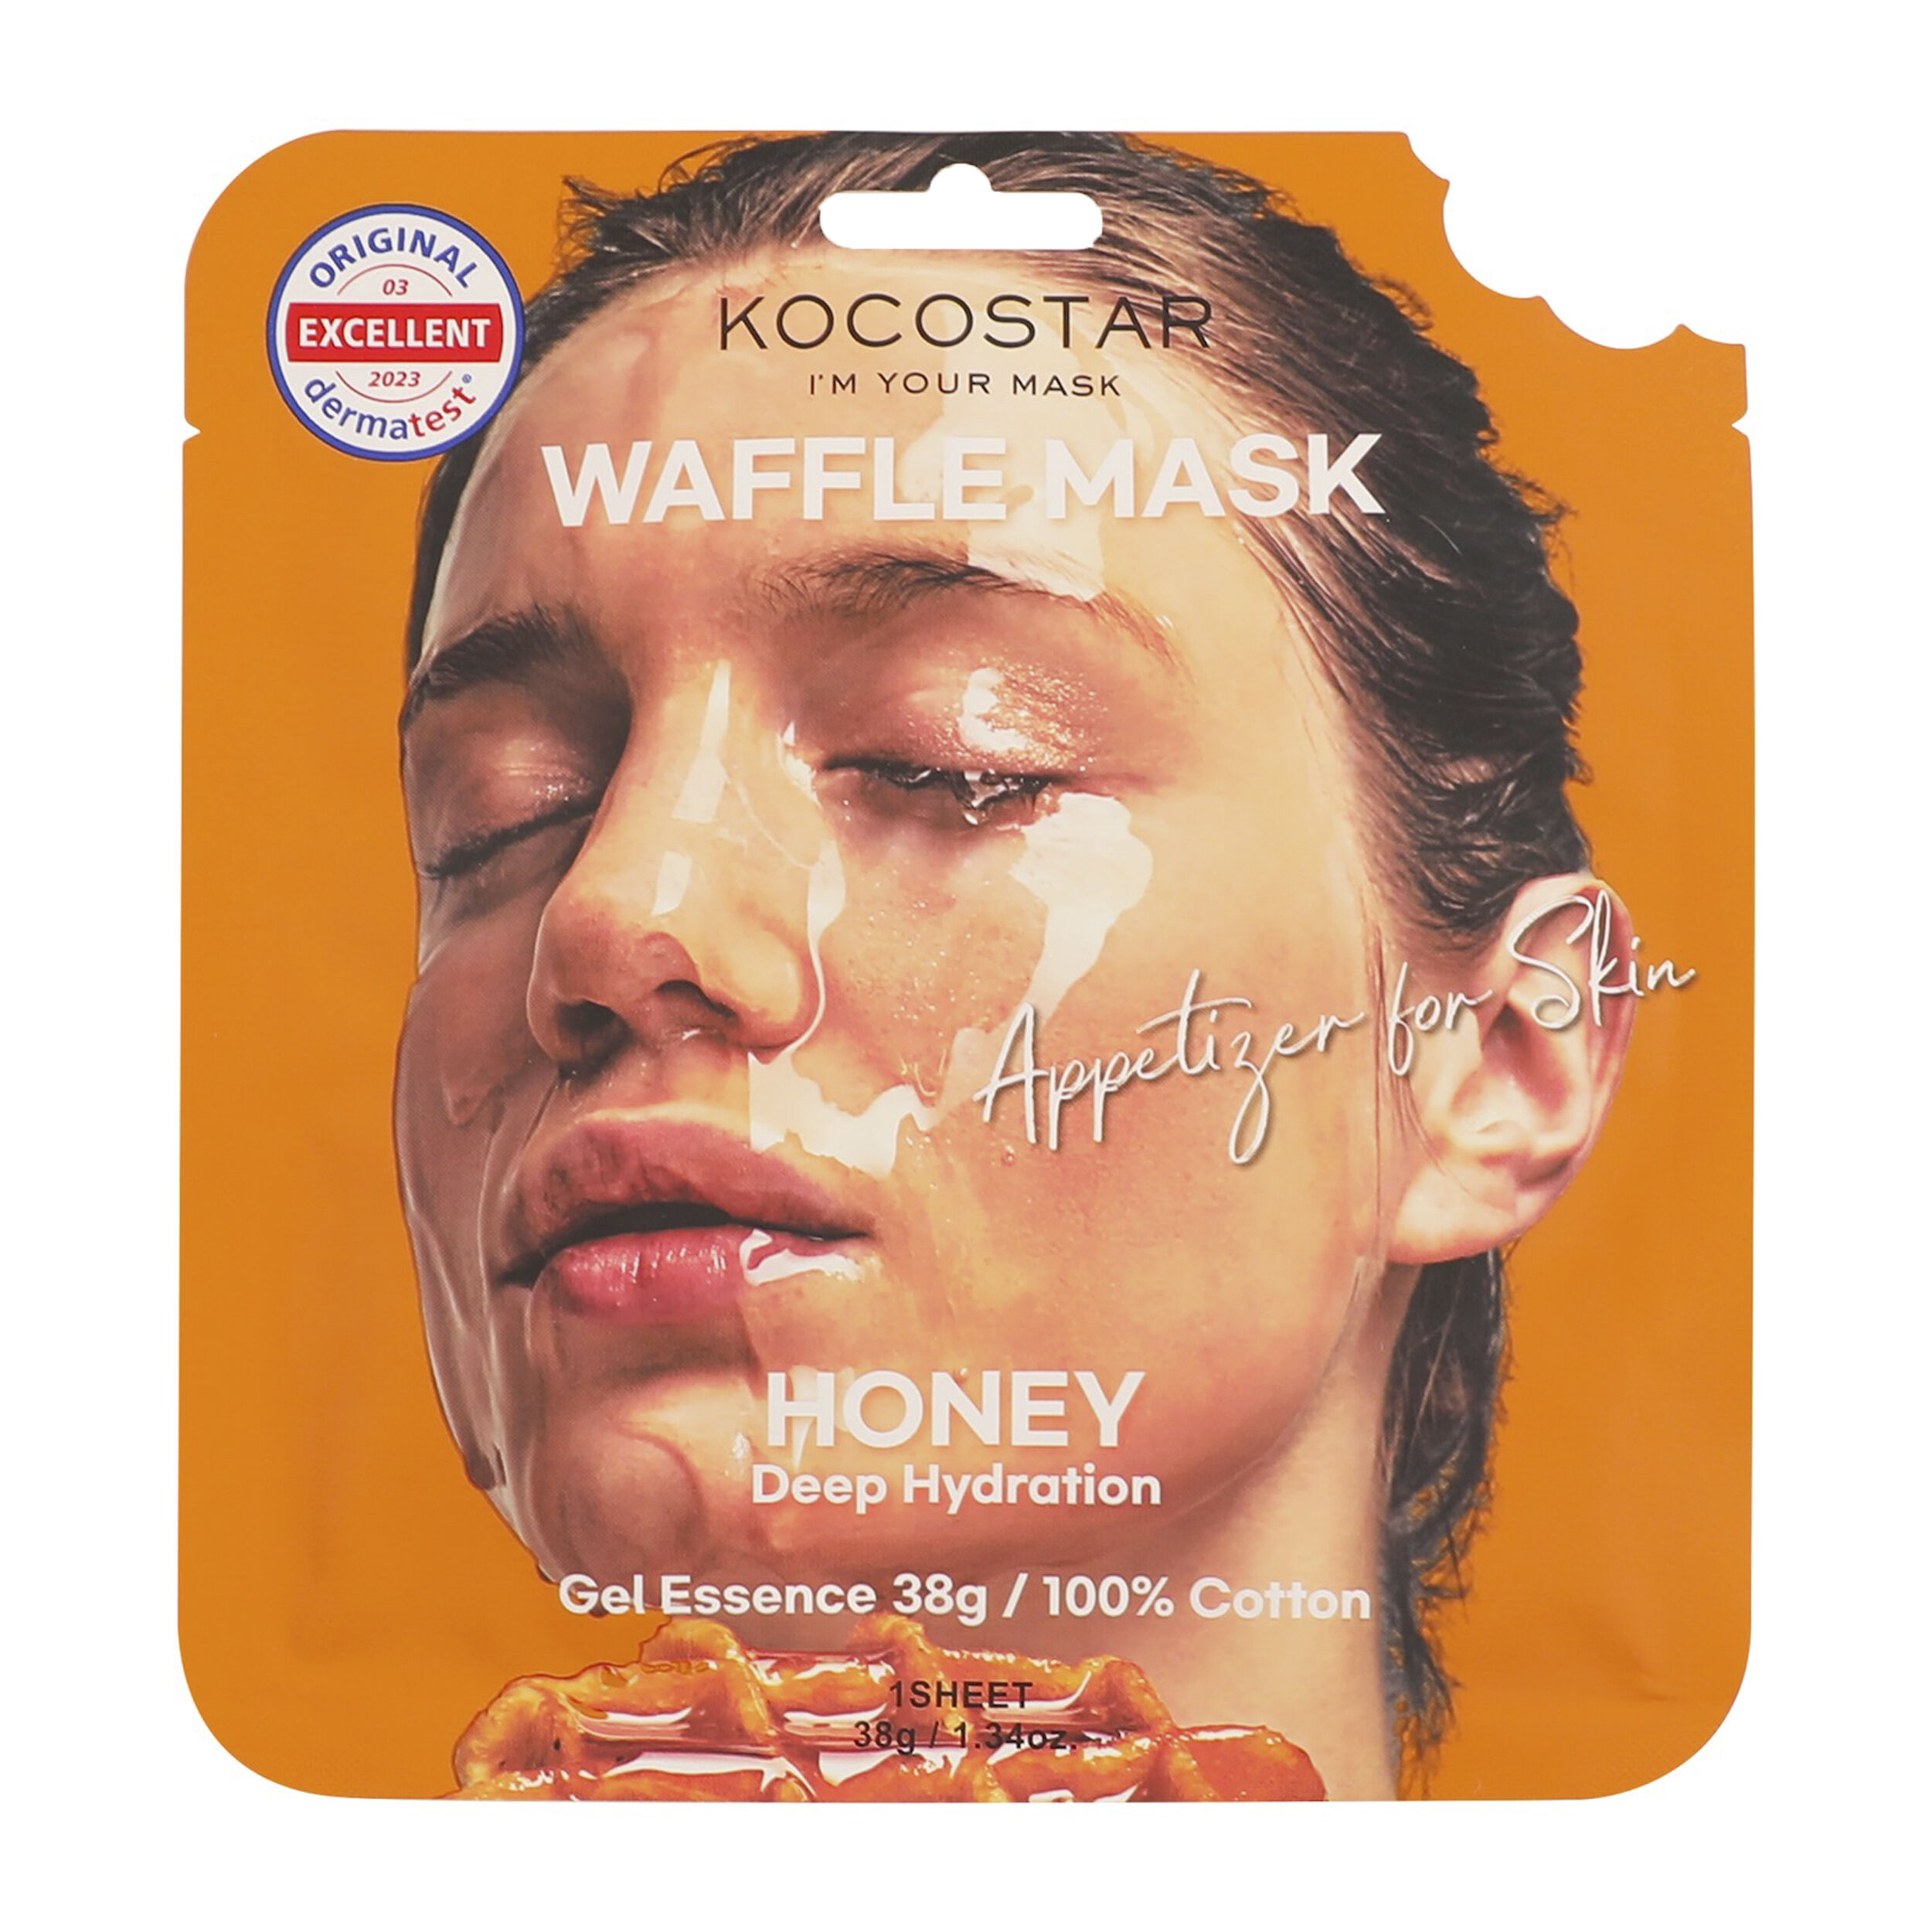 маска для губ ebug с экстрактом меда 8 г Медовая маска для лица Kocostar Waffle Mask, 38 гр